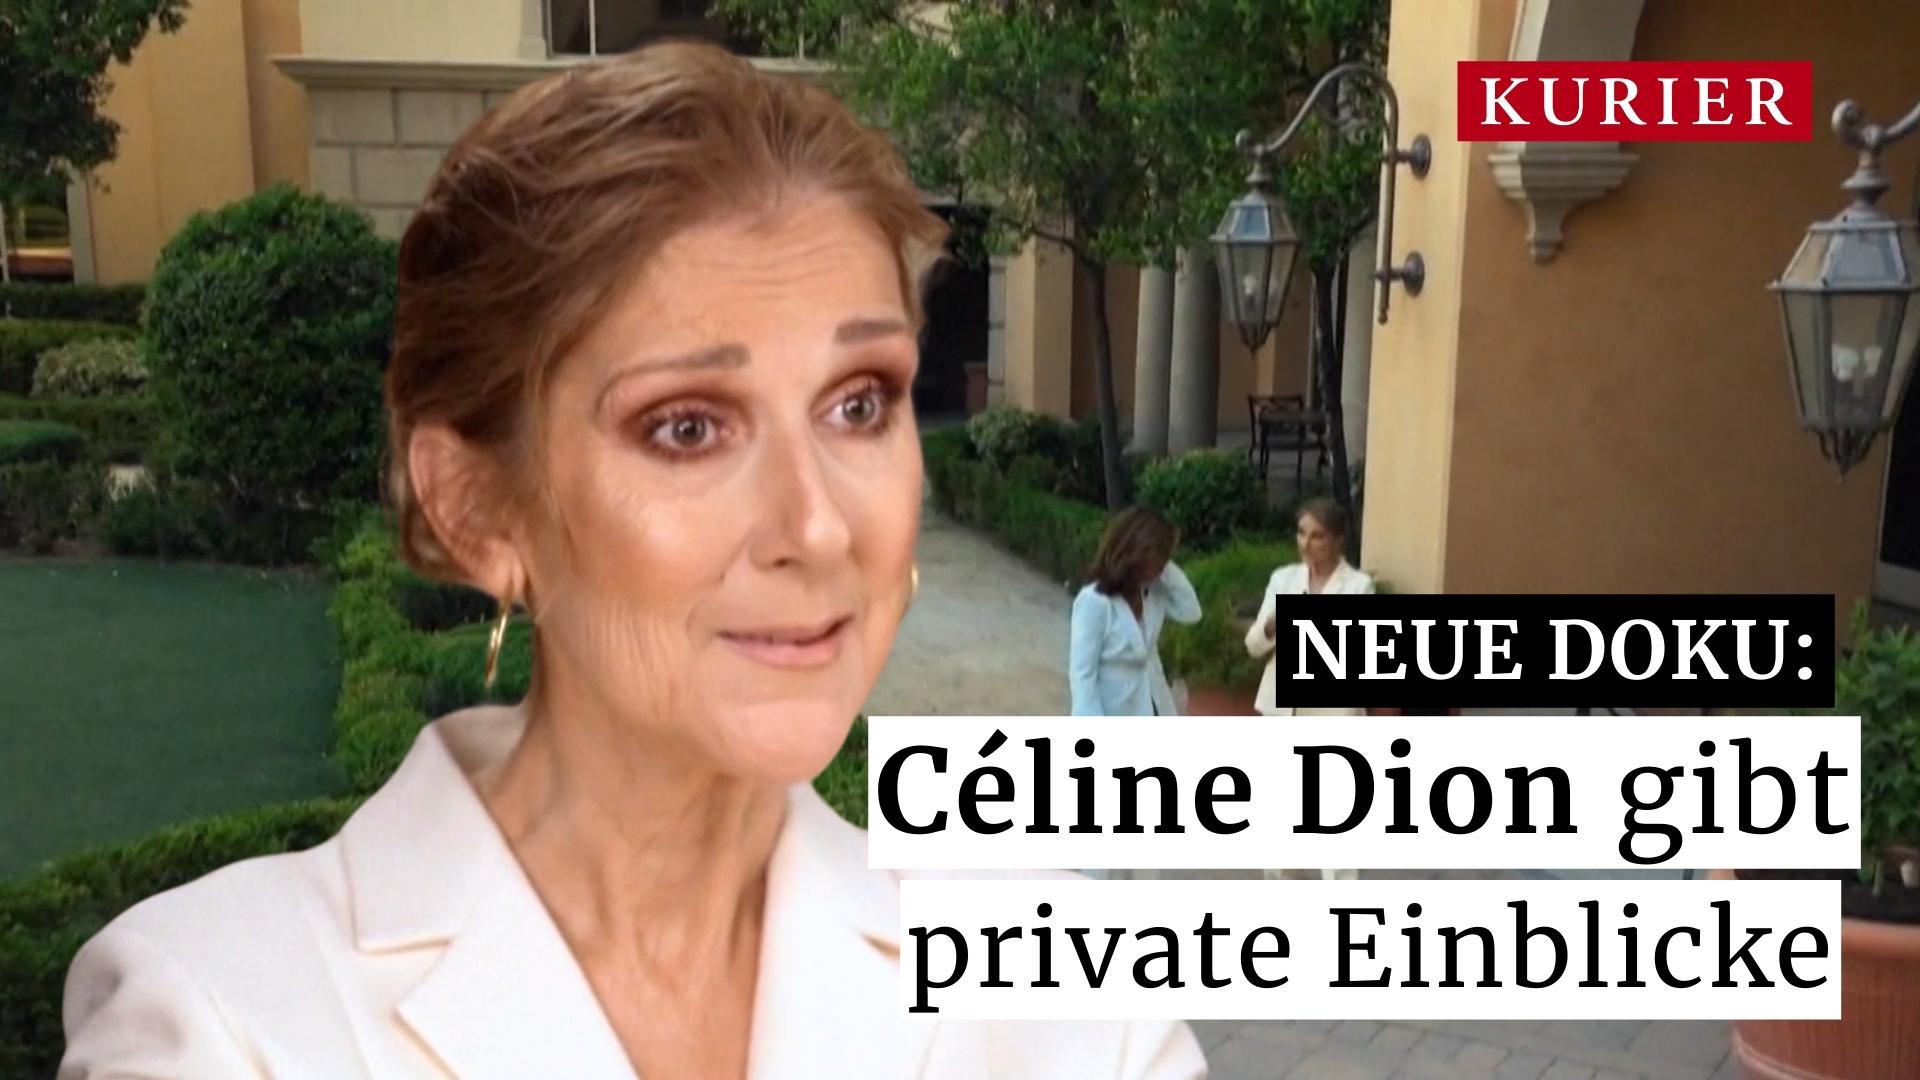 Doku-Prämiere: Céline Dion spricht über schwere Krankheit